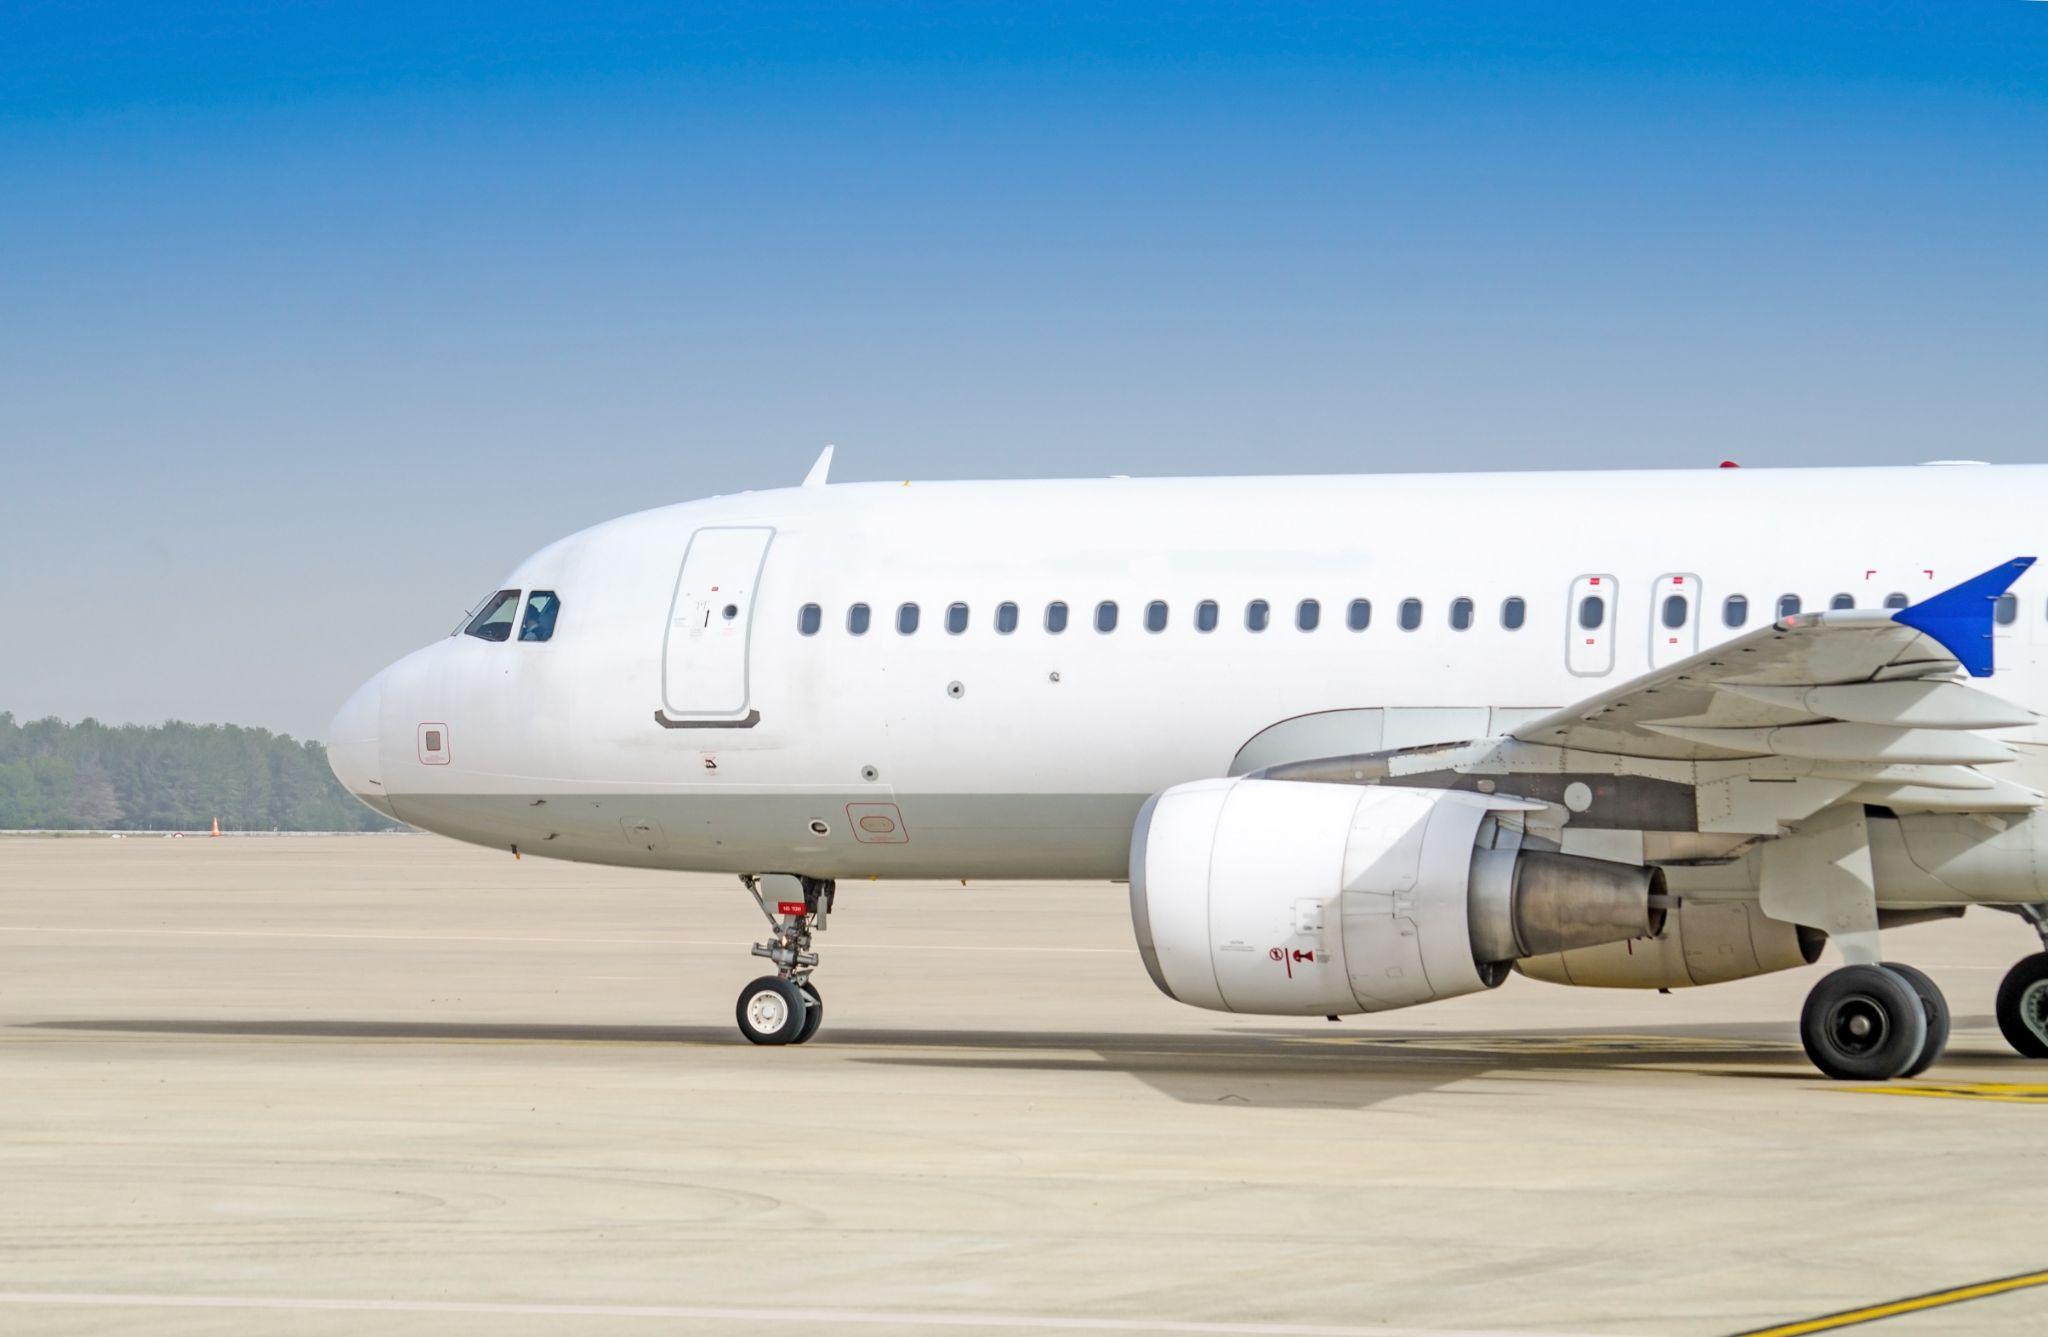 White Airbus A320 on tarmac.